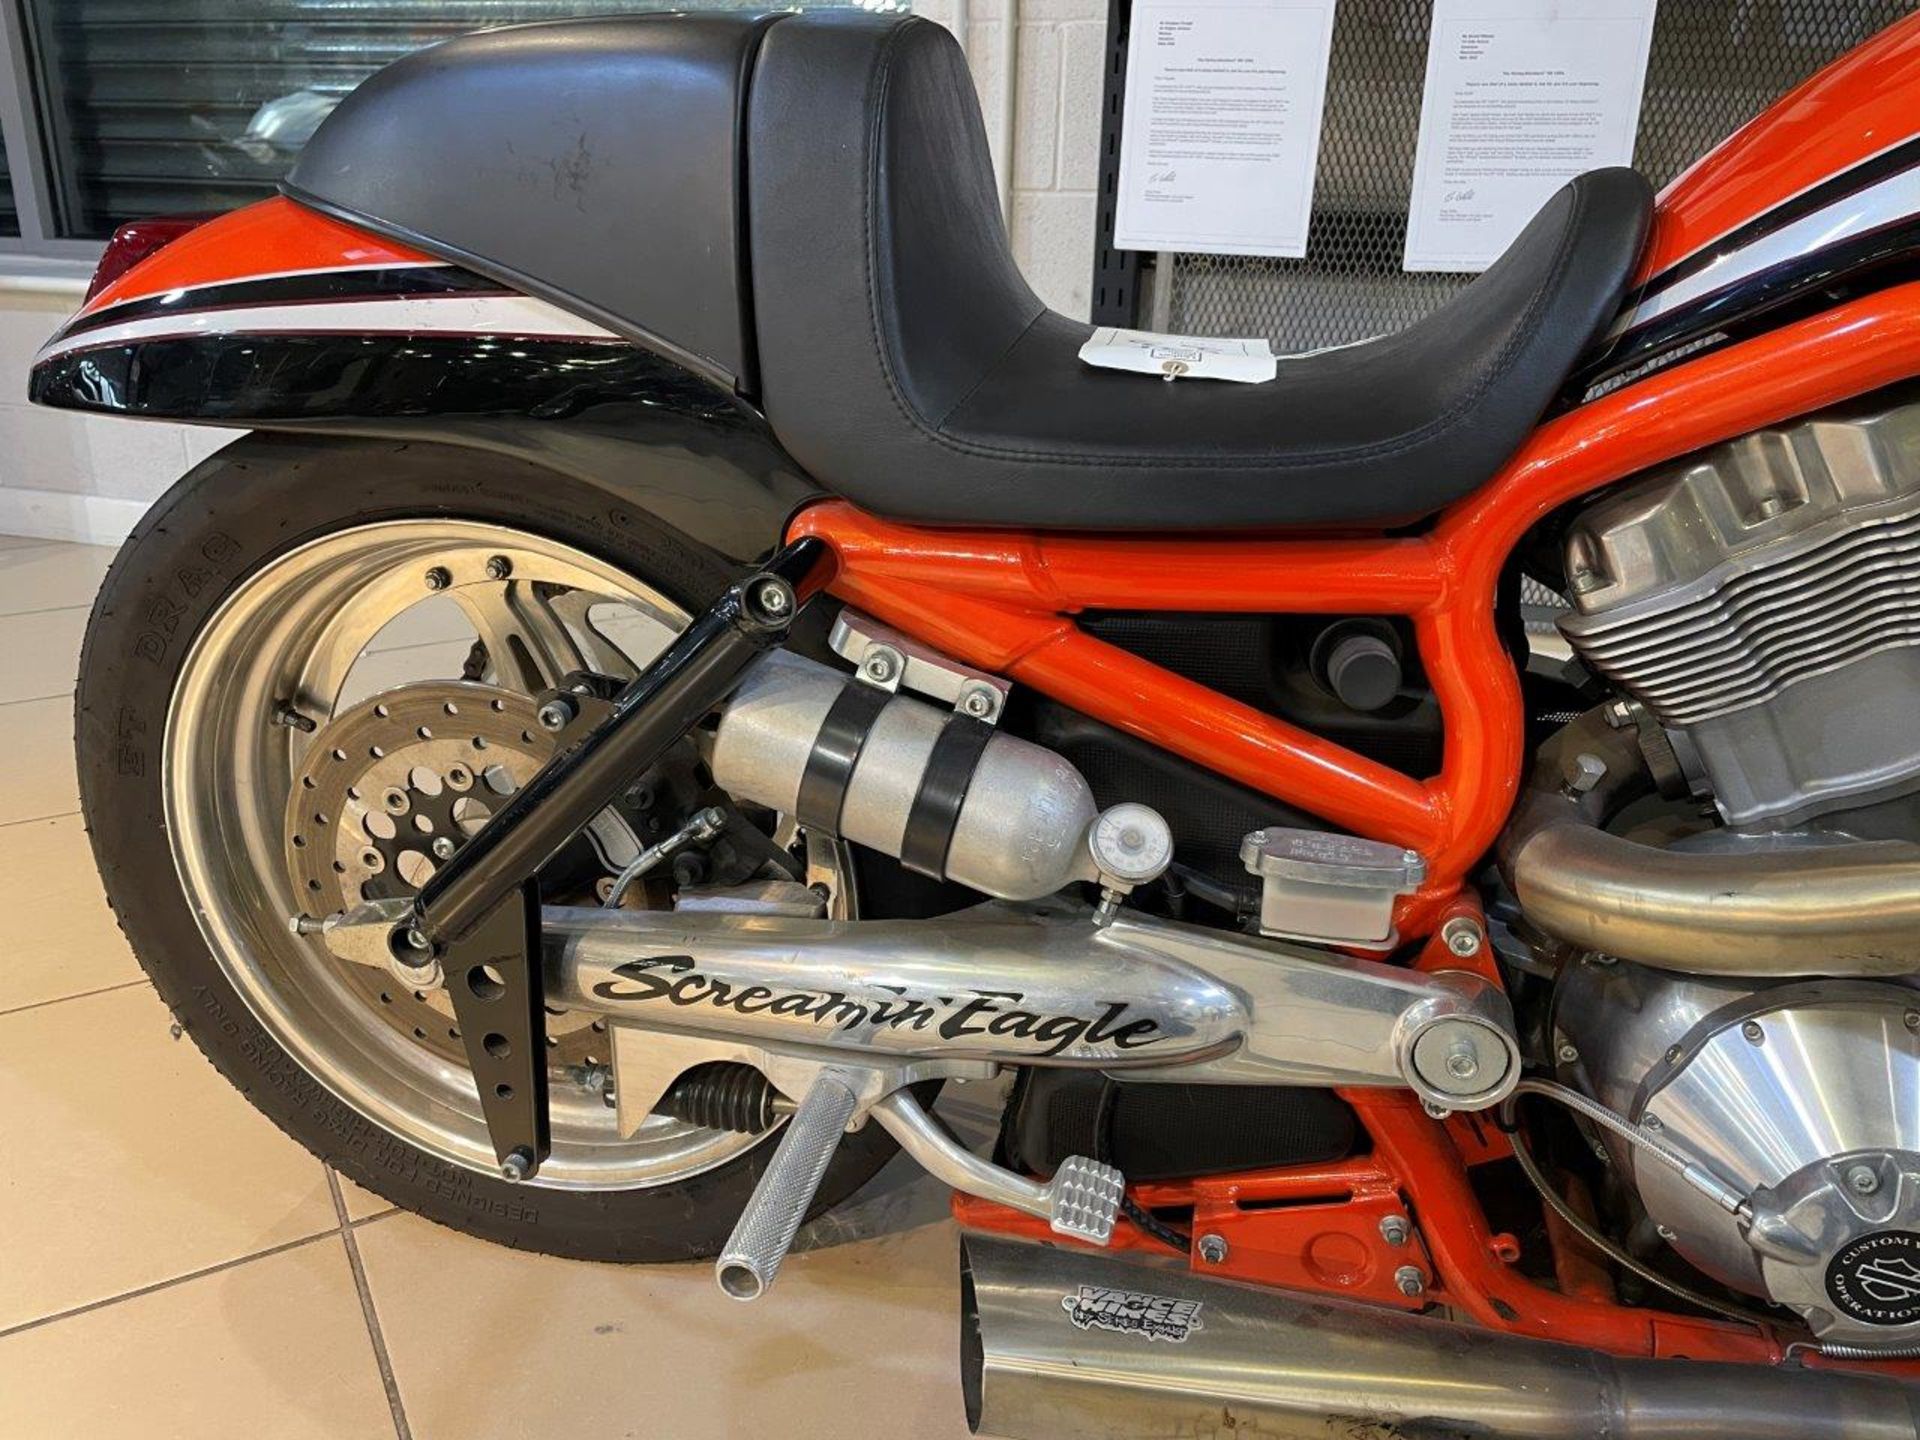 Harley Davidson V-Rod Destroyer Drag Race Bike (2006) - Image 21 of 34